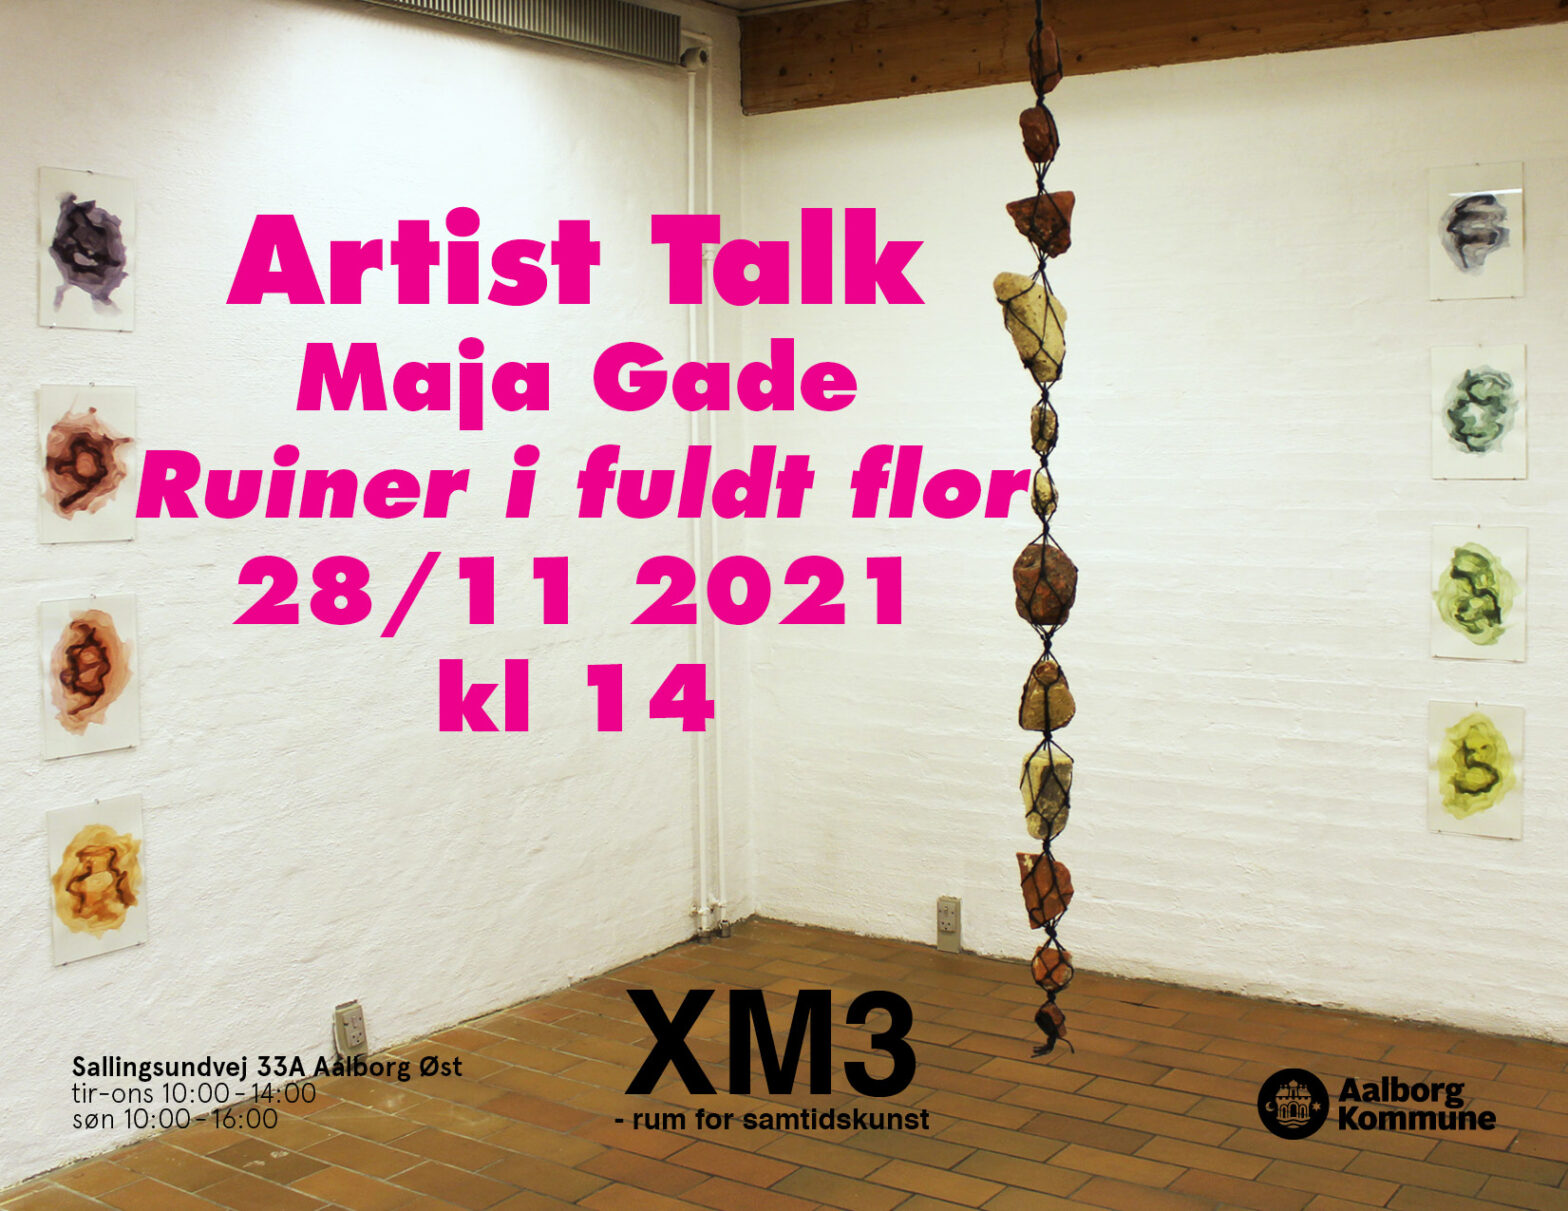 Artist talk - Maja Gade - Ruiner i fuldt flor